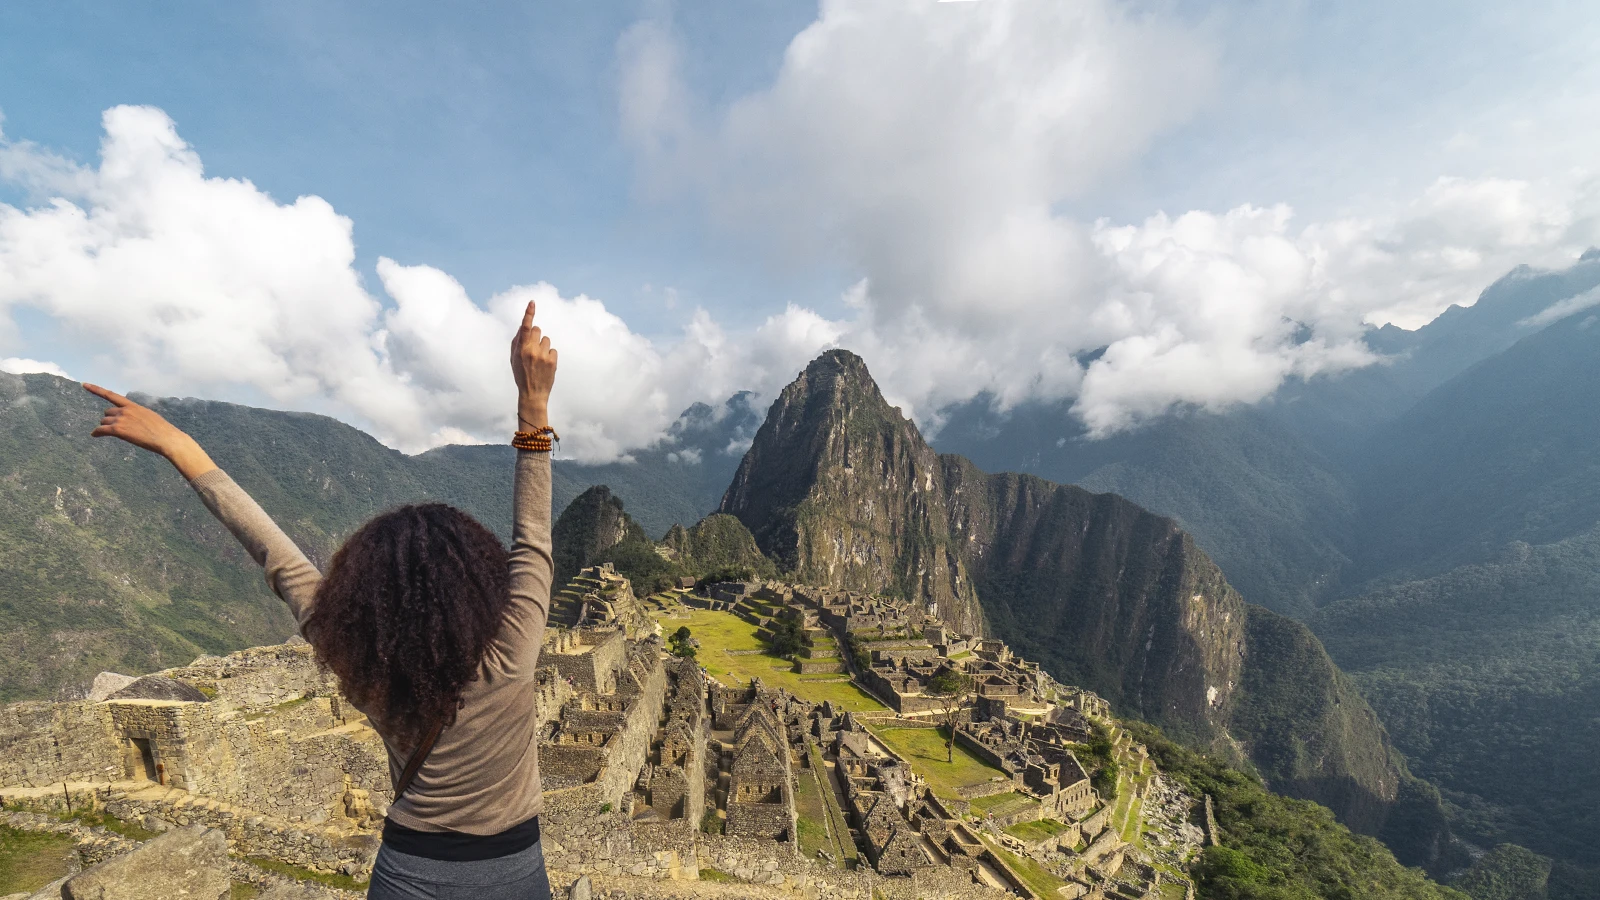 Maravilla del mundo, Machu Picchu. Fuente: CuscoPeru.com